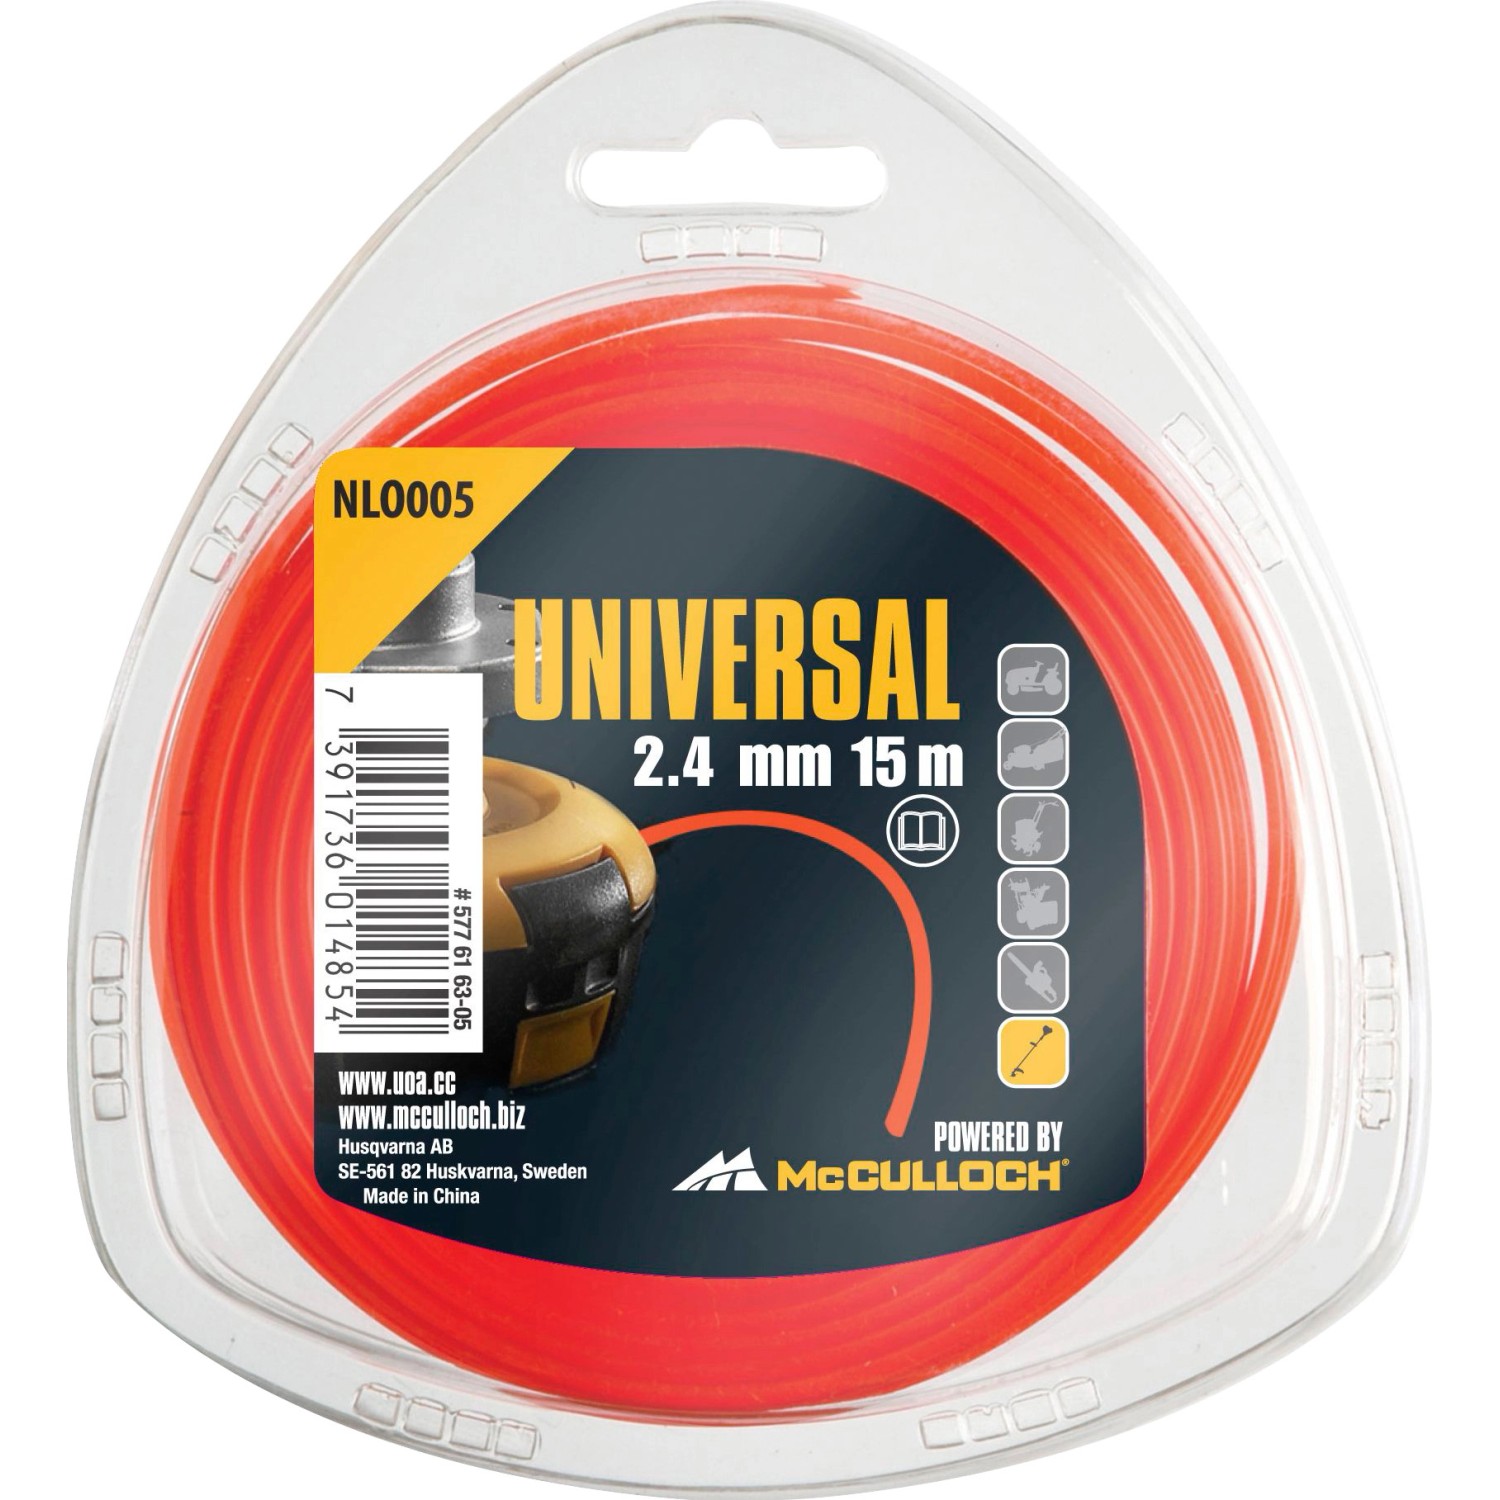 Universal Trimmerfaden Nylon 2,4 mm NLO005 15 m von Universal